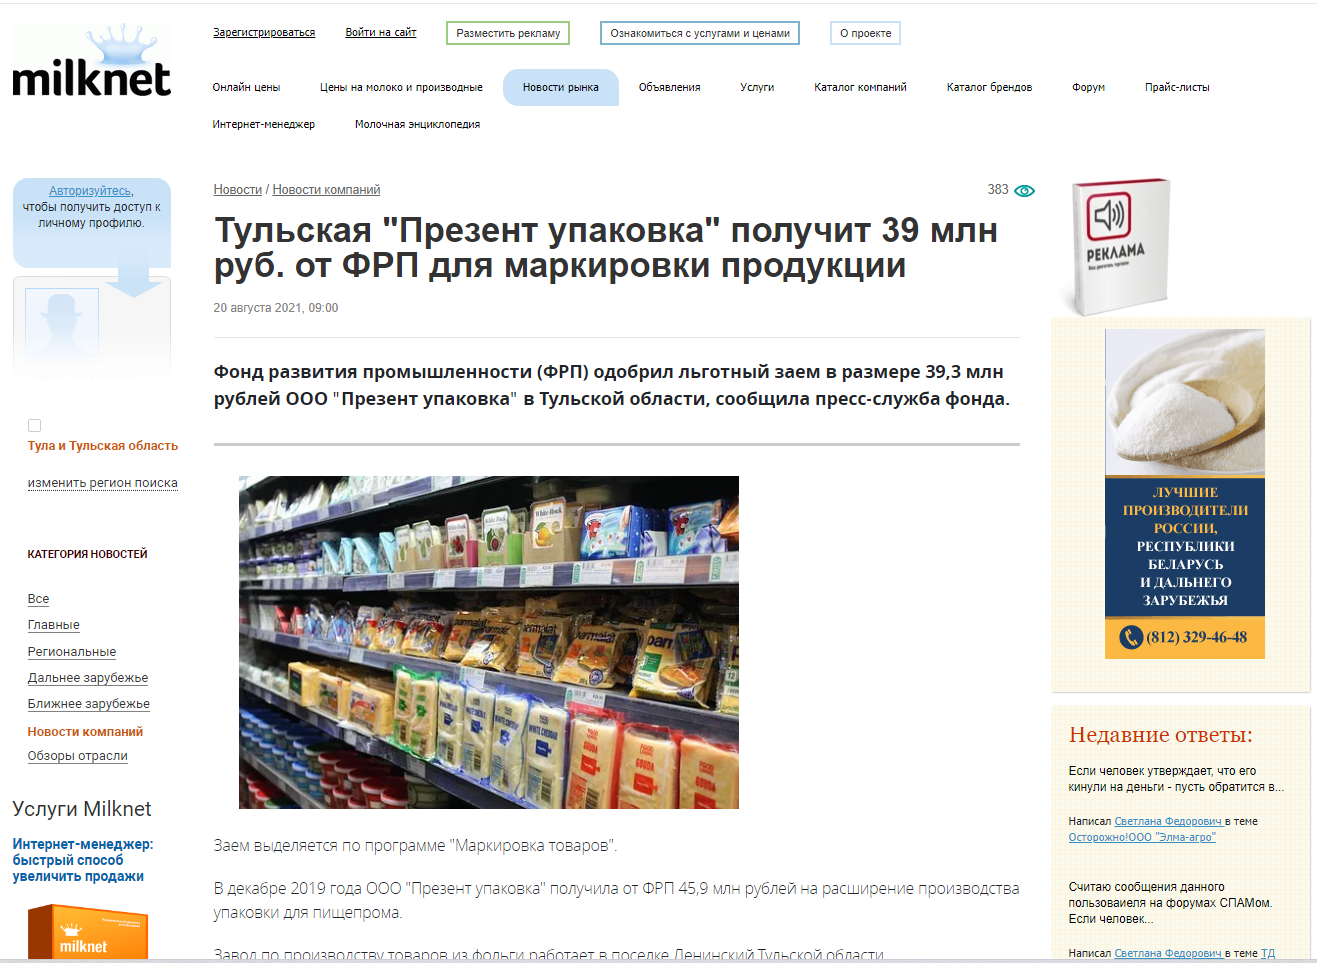 Тульская "Презент упаковка" получит 39 млн руб. от ФРП для маркировки продукции  